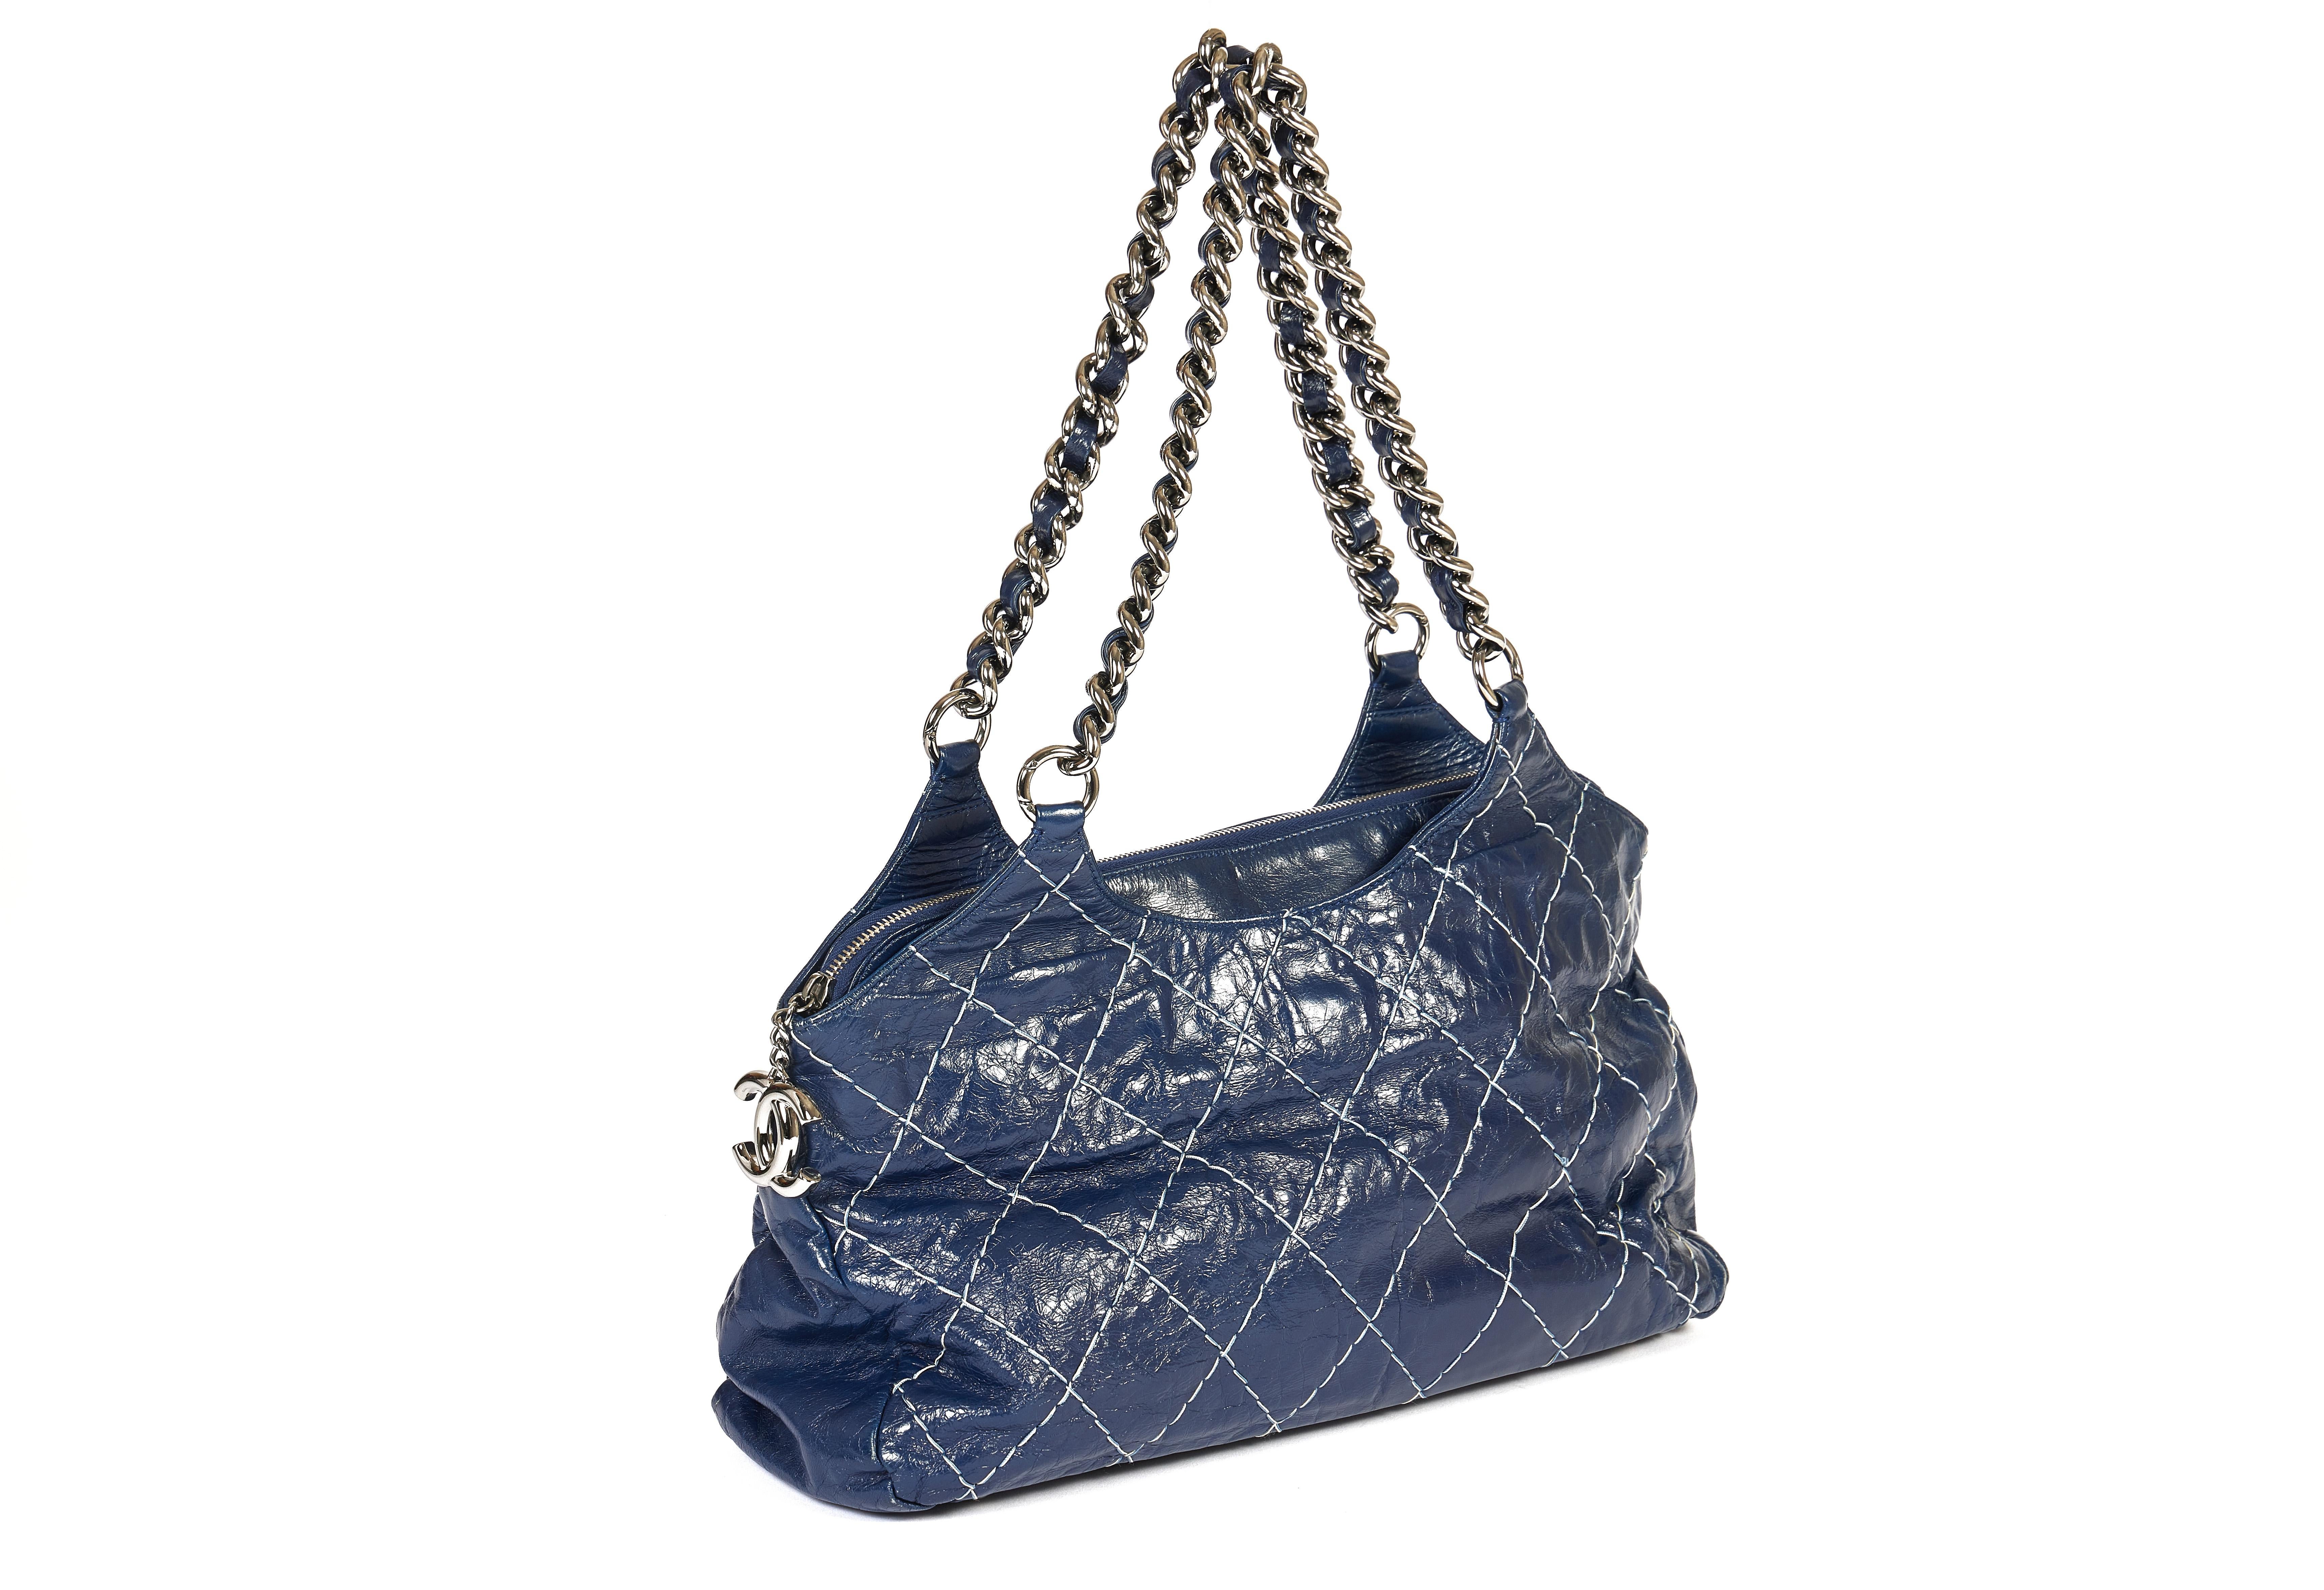 Ce sac à bandoulière de Chanel se présente dans un beau ton bleu foncé. Le cuir glacé vieilli est surpiqué d'un motif matelassé. Les deux chaînes d'épaule argentées s'accordent parfaitement avec le double logo CC de la fermeture éclair. La hauteur